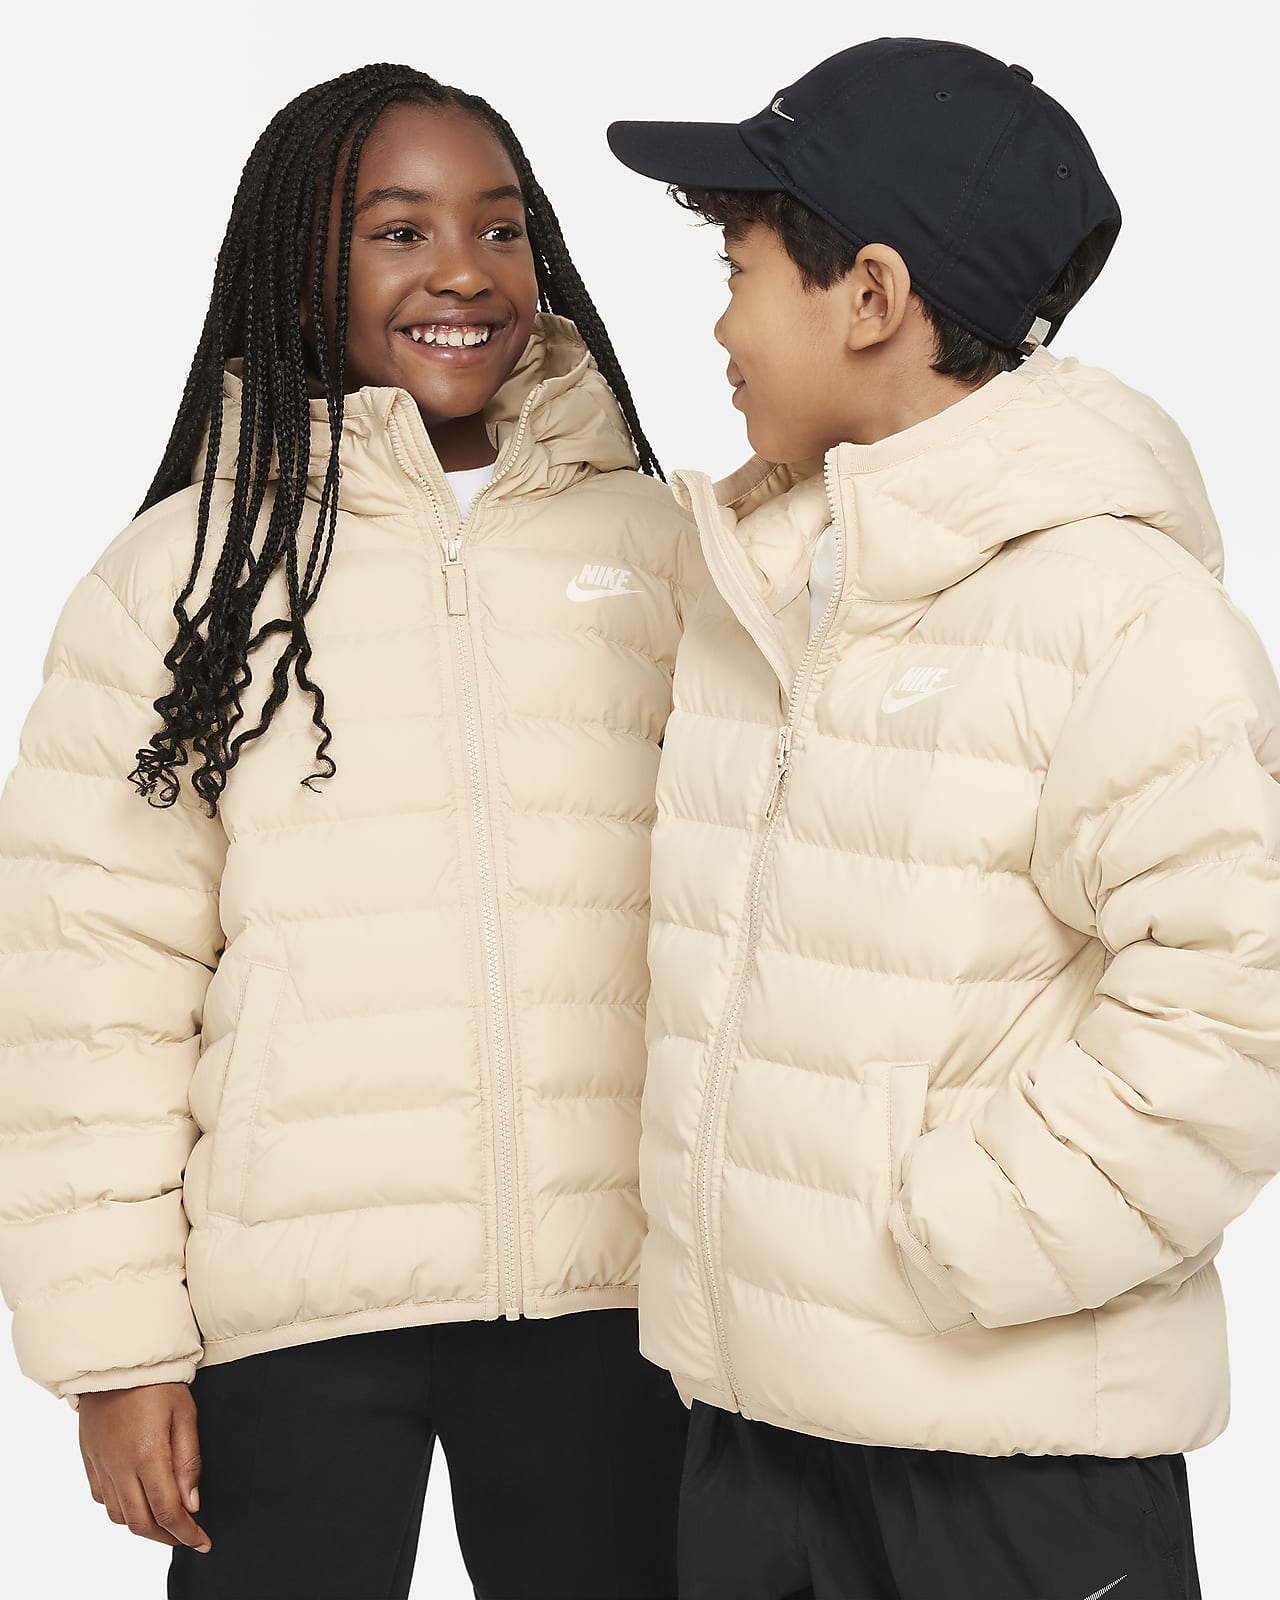 Nike Kids Synthetic Fill Hooded Jacket (Little Kids/Big Kids